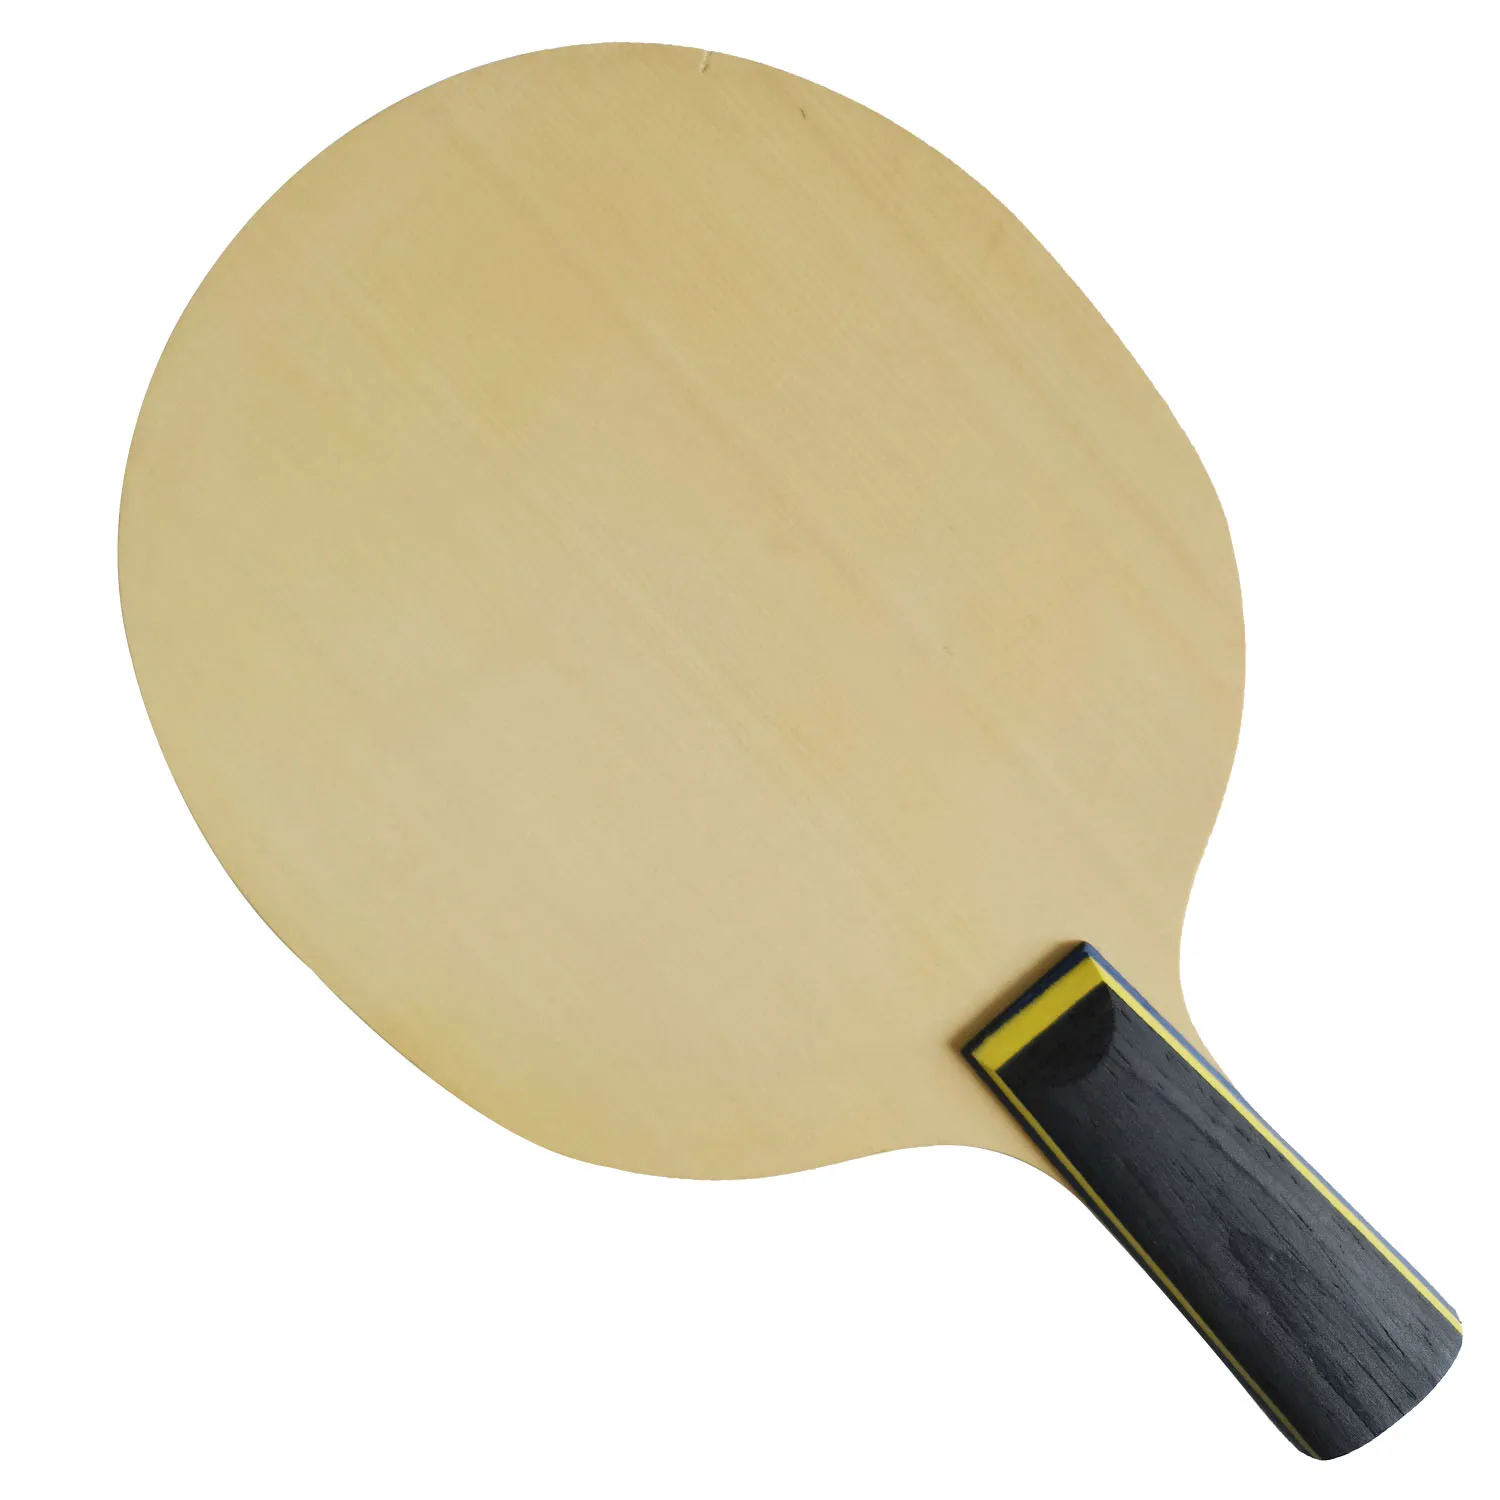 Оригинальная ракетка для настольного тенниса TUTTLE WEALTH RONGHUA Blade, бита для пинг-понга, лопатка 3